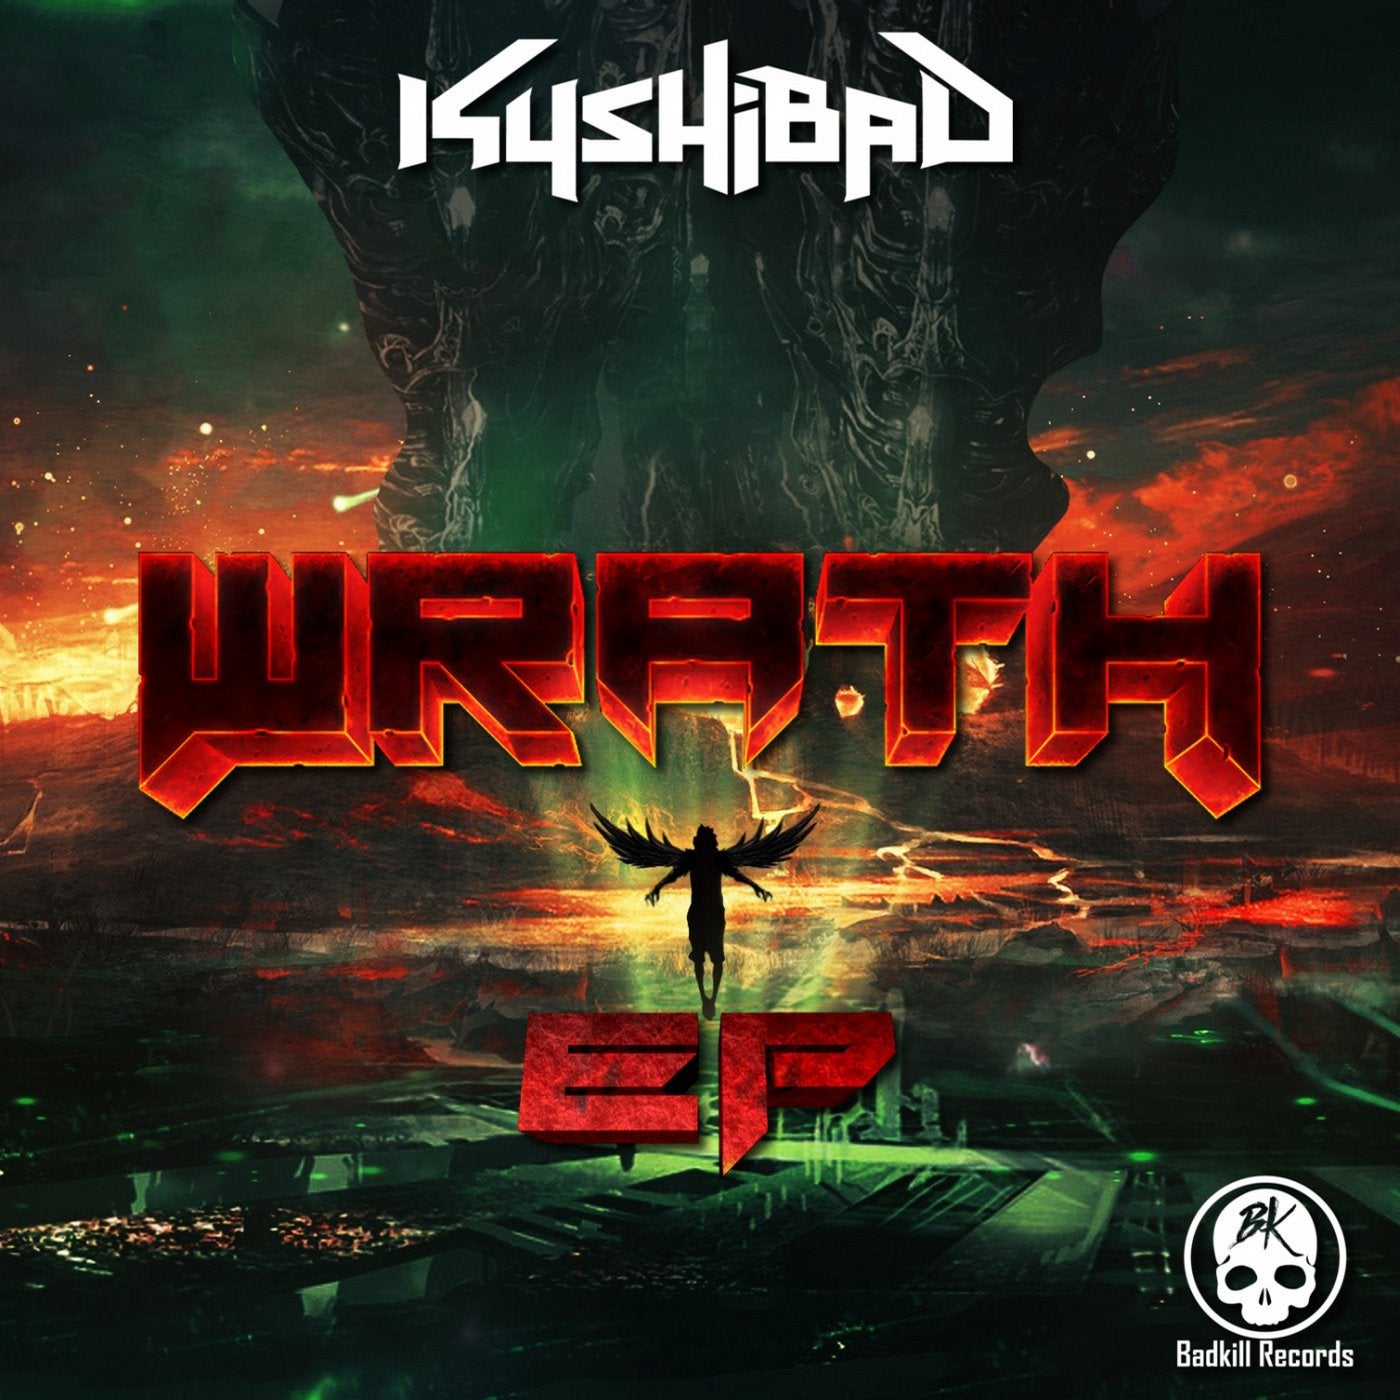 Wrath EP